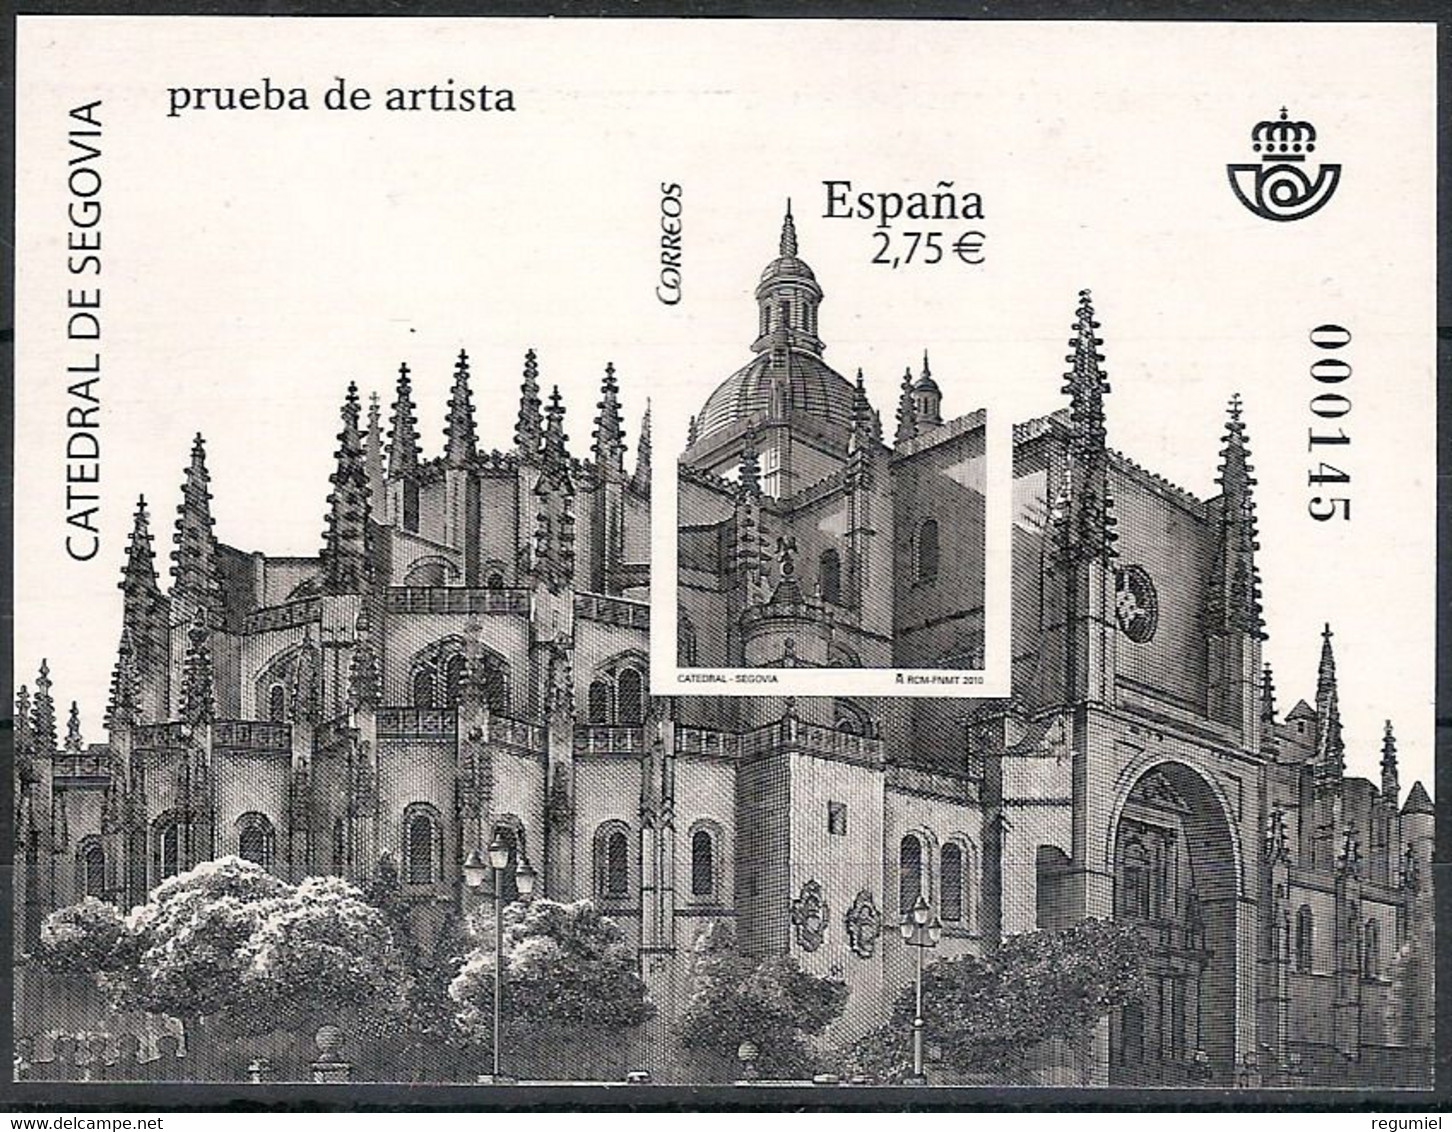 España Prueba De Lujo 102. Catedral De Segovia. 2010 - Blocs & Hojas